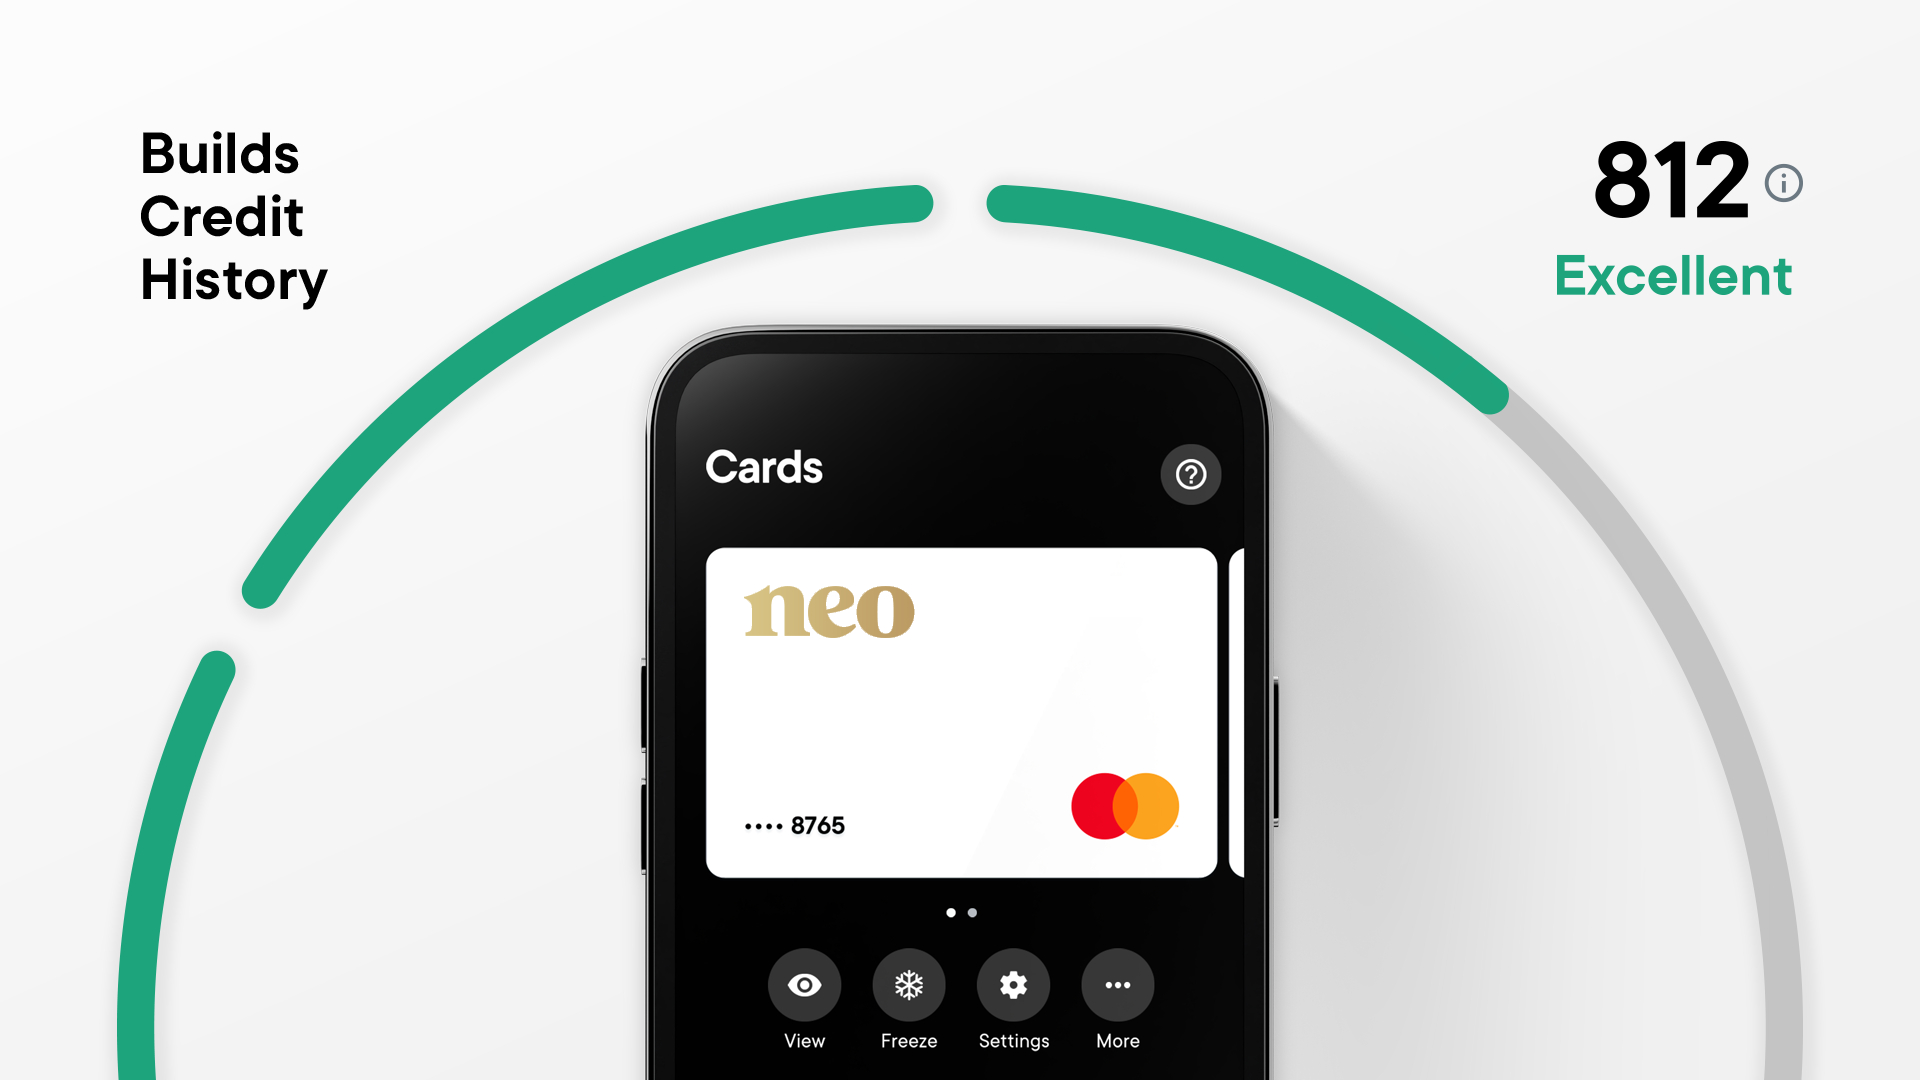 Enjoy Cash Secured Credit Card - Build Credit & Rewards